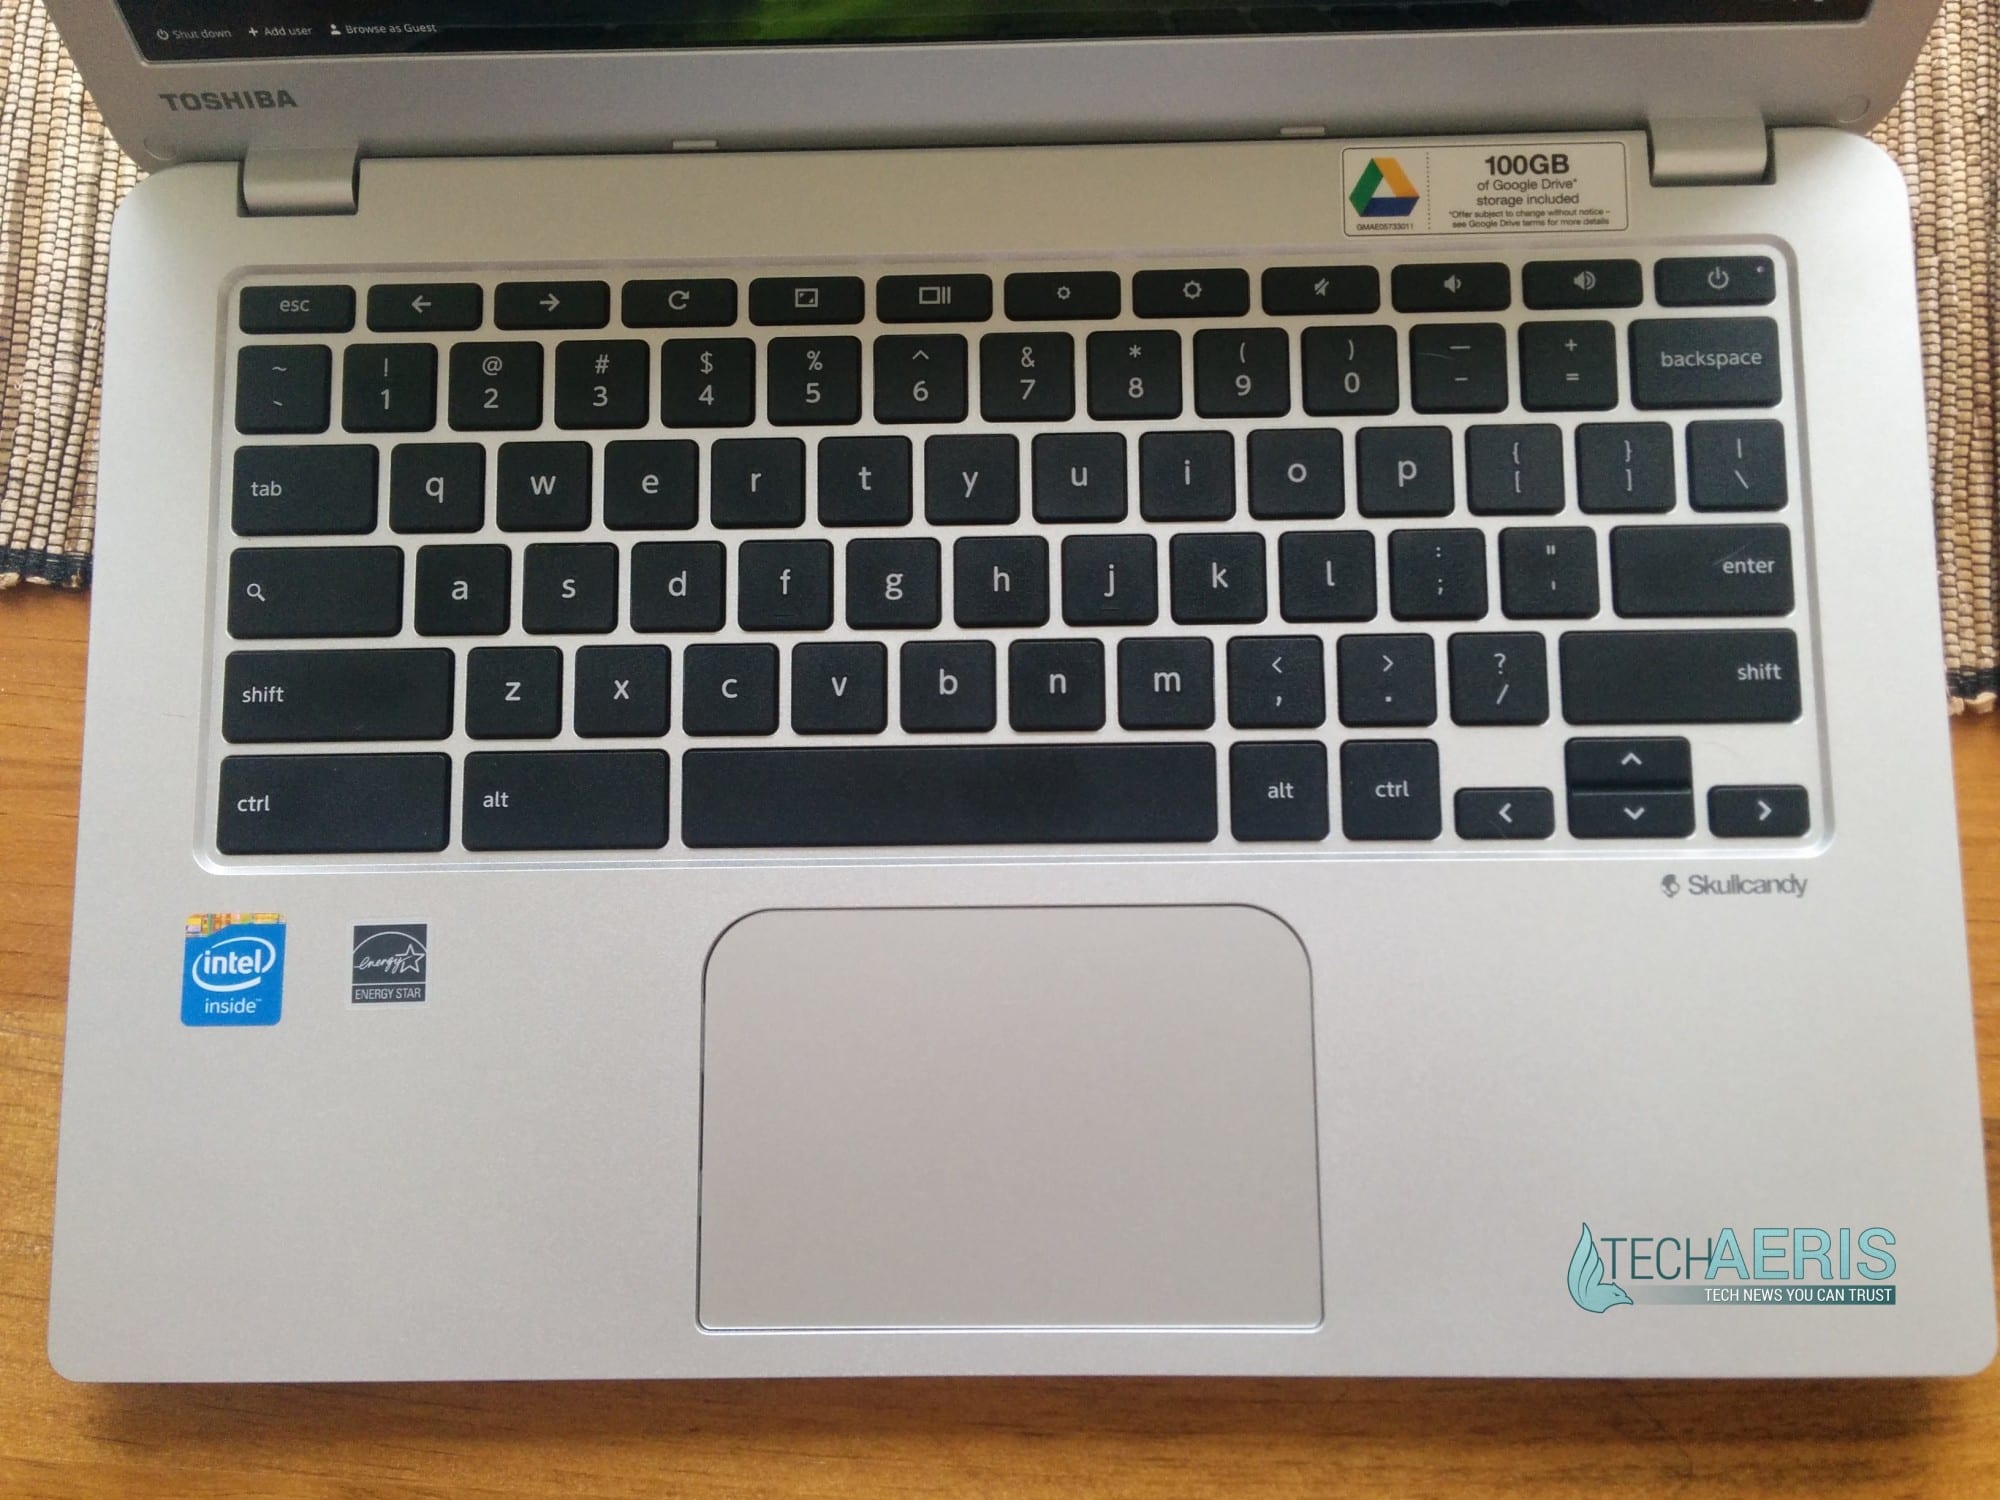 Toshiba Chromebook 2 keyboard